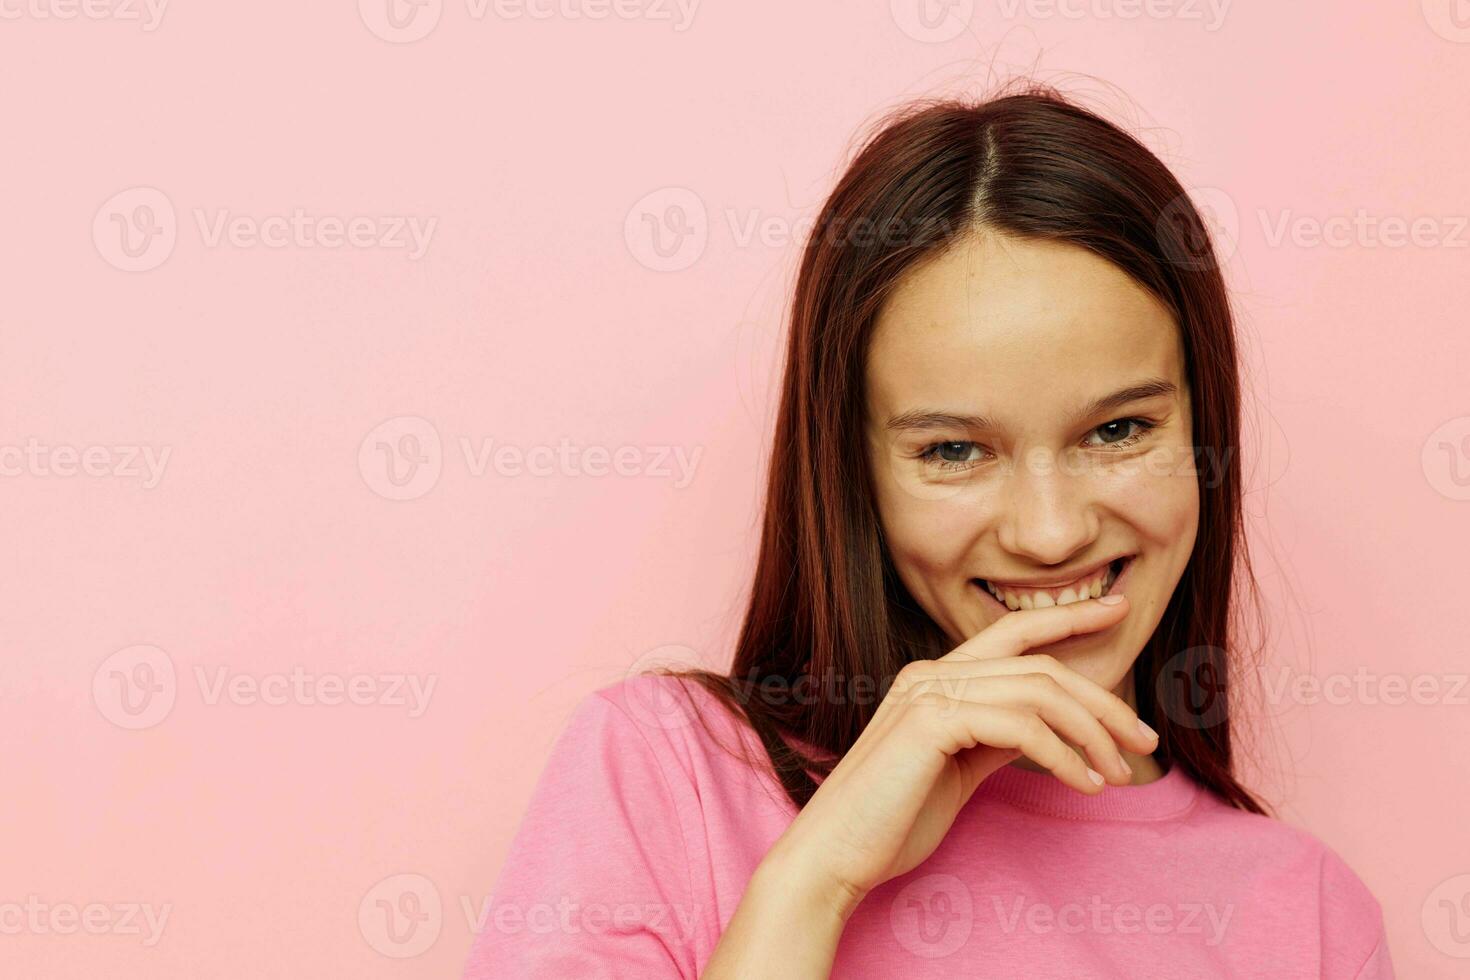 fotografi Söt kvinna i en rosa t-shirt tillfällig kläder livsstil oförändrad foto